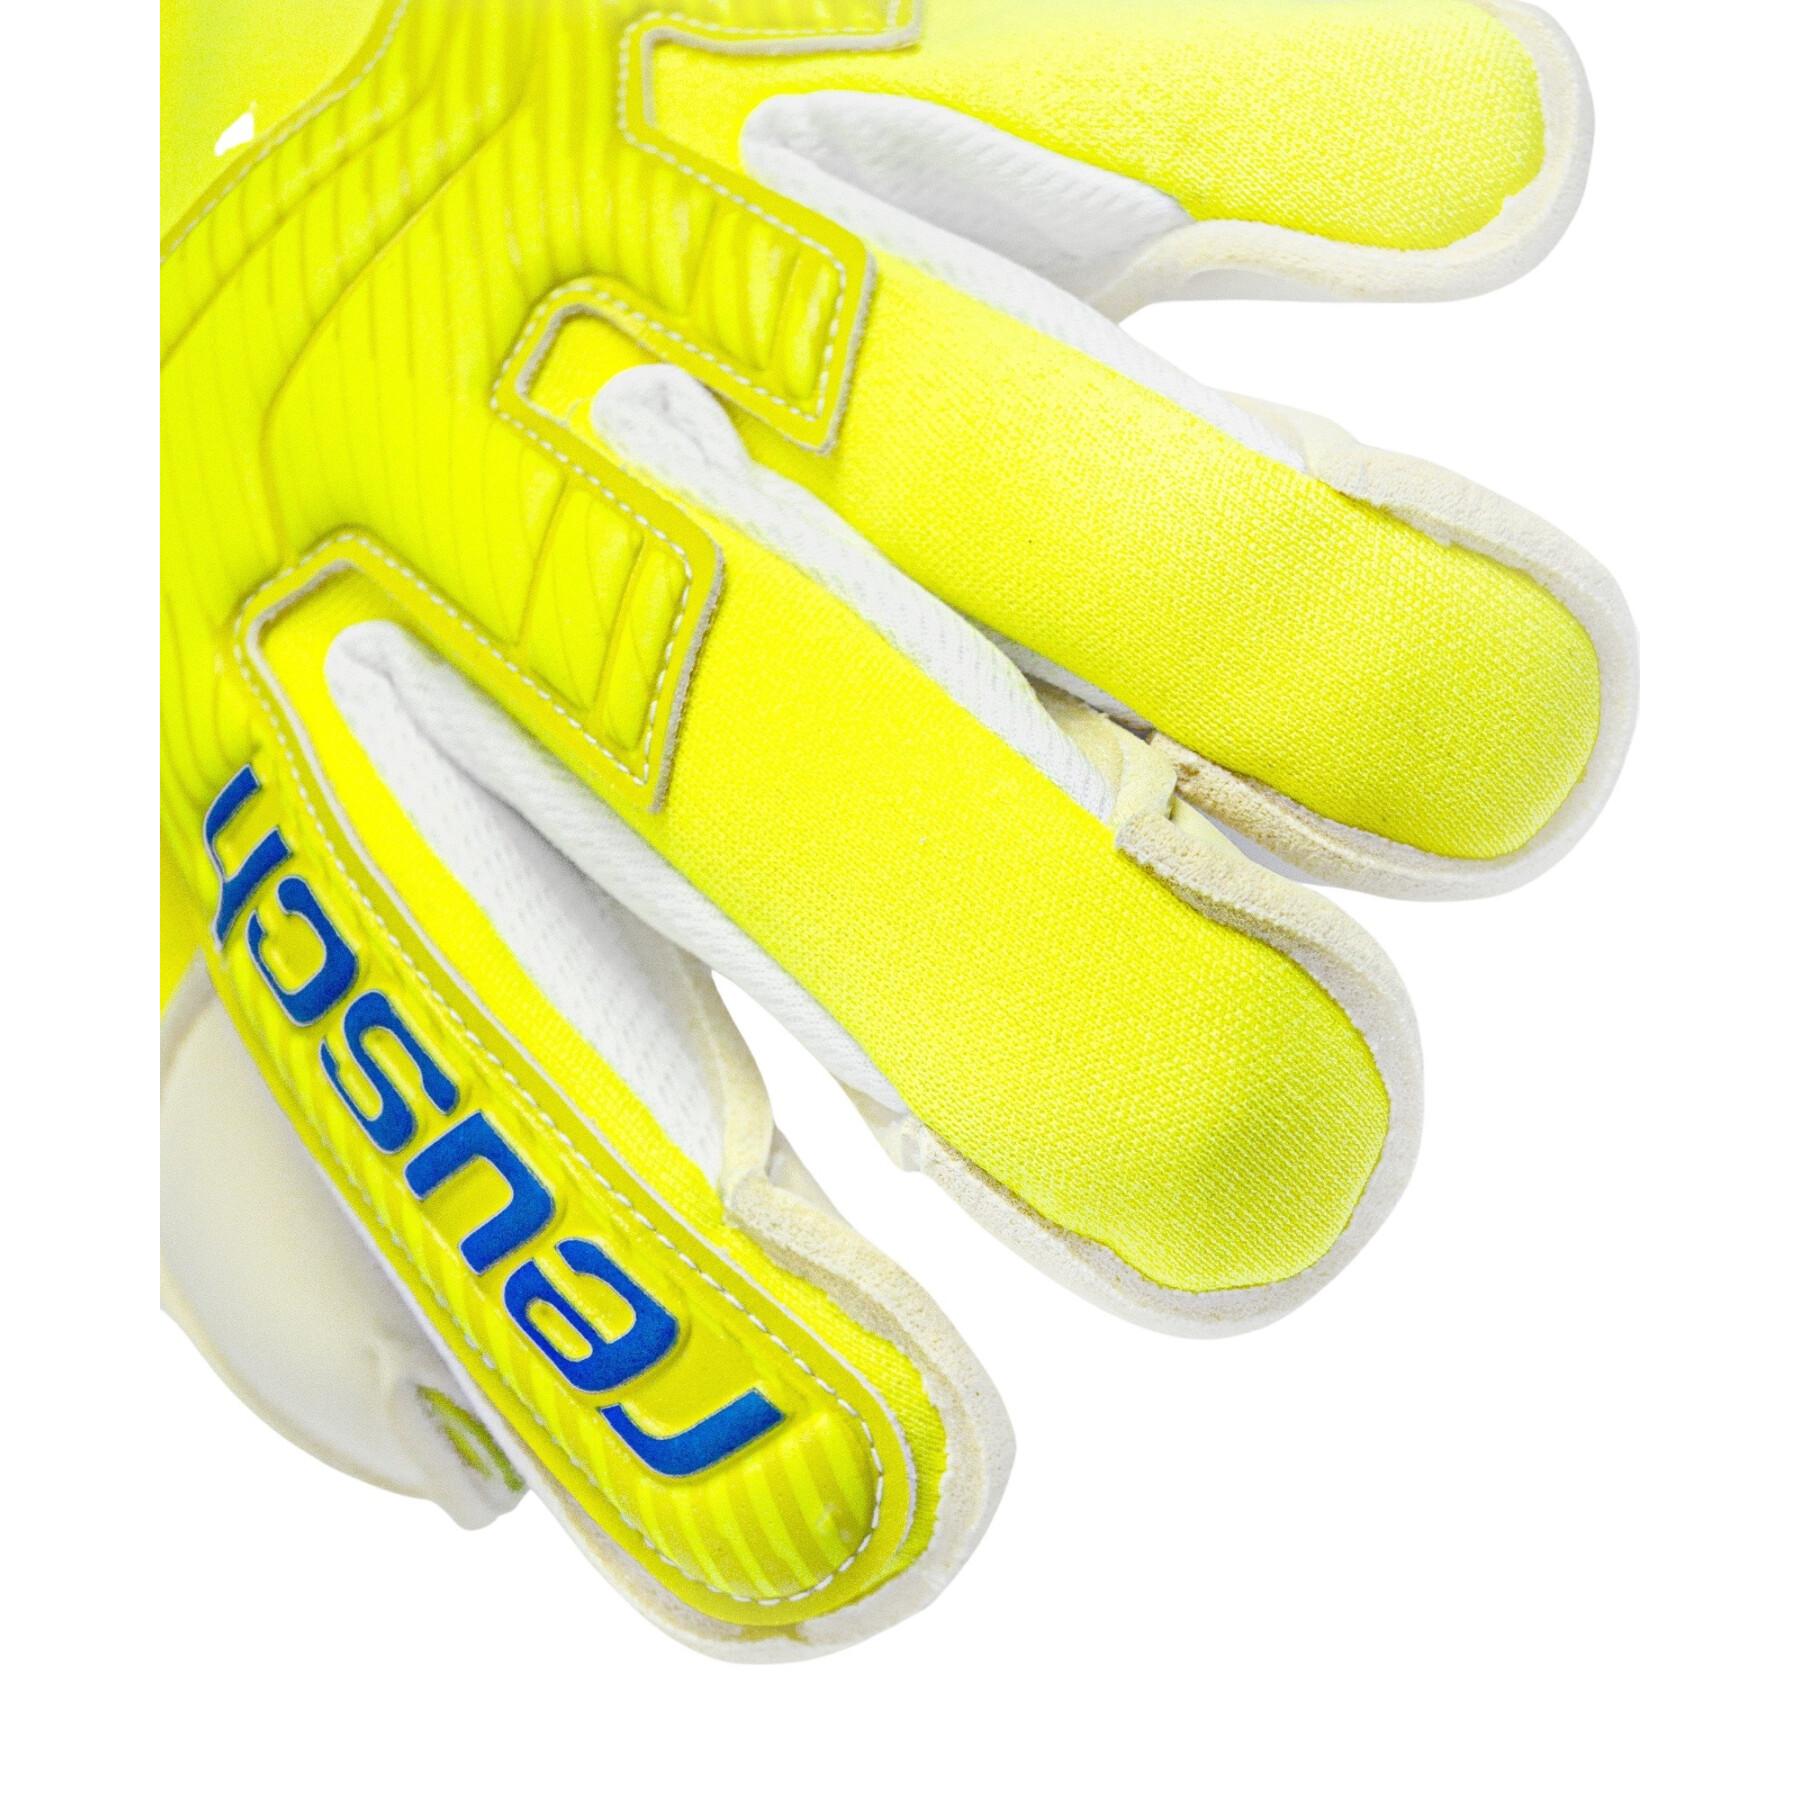 Goalkeeper's glove Reusch Attrack Gold x Alpha